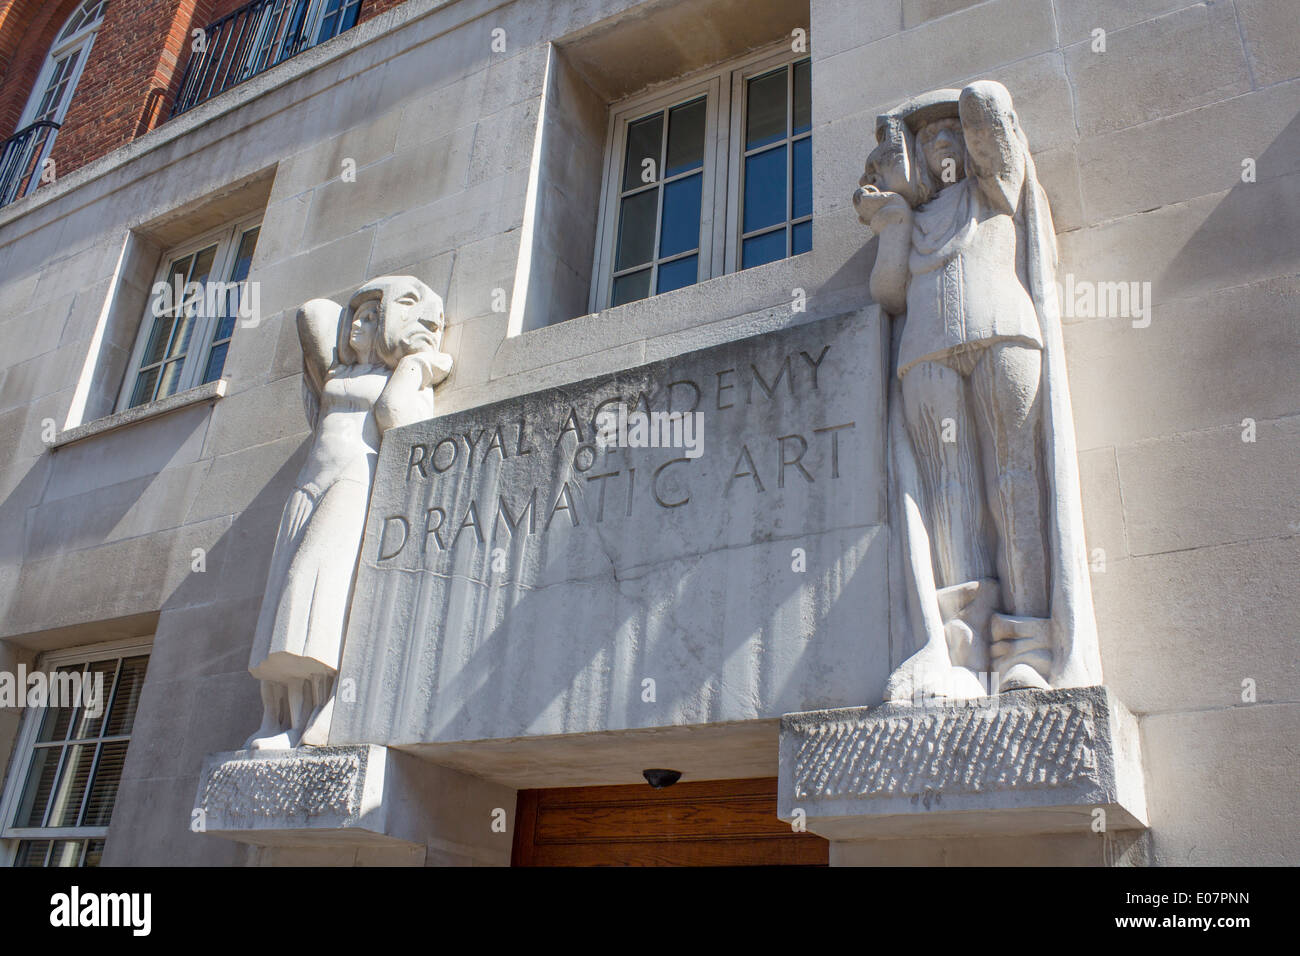 RADA Royal Academy of Dramatic Arts entrée de l'édifice avec des sculptures en pierre Gower Street Bloomsbury Londres Angleterre Royaume-uni Banque D'Images